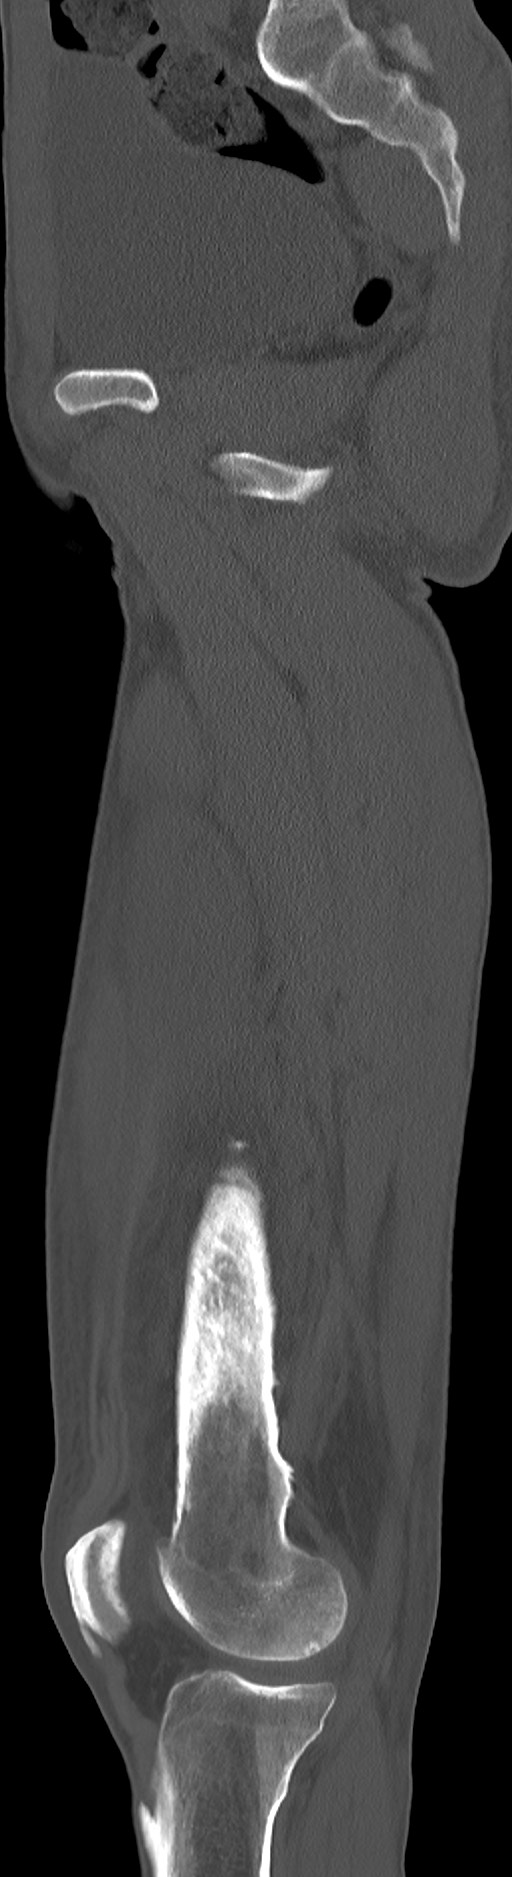 Chronic osteomyelitis (with sequestrum) (Radiopaedia 74813-85822 C 67).jpg